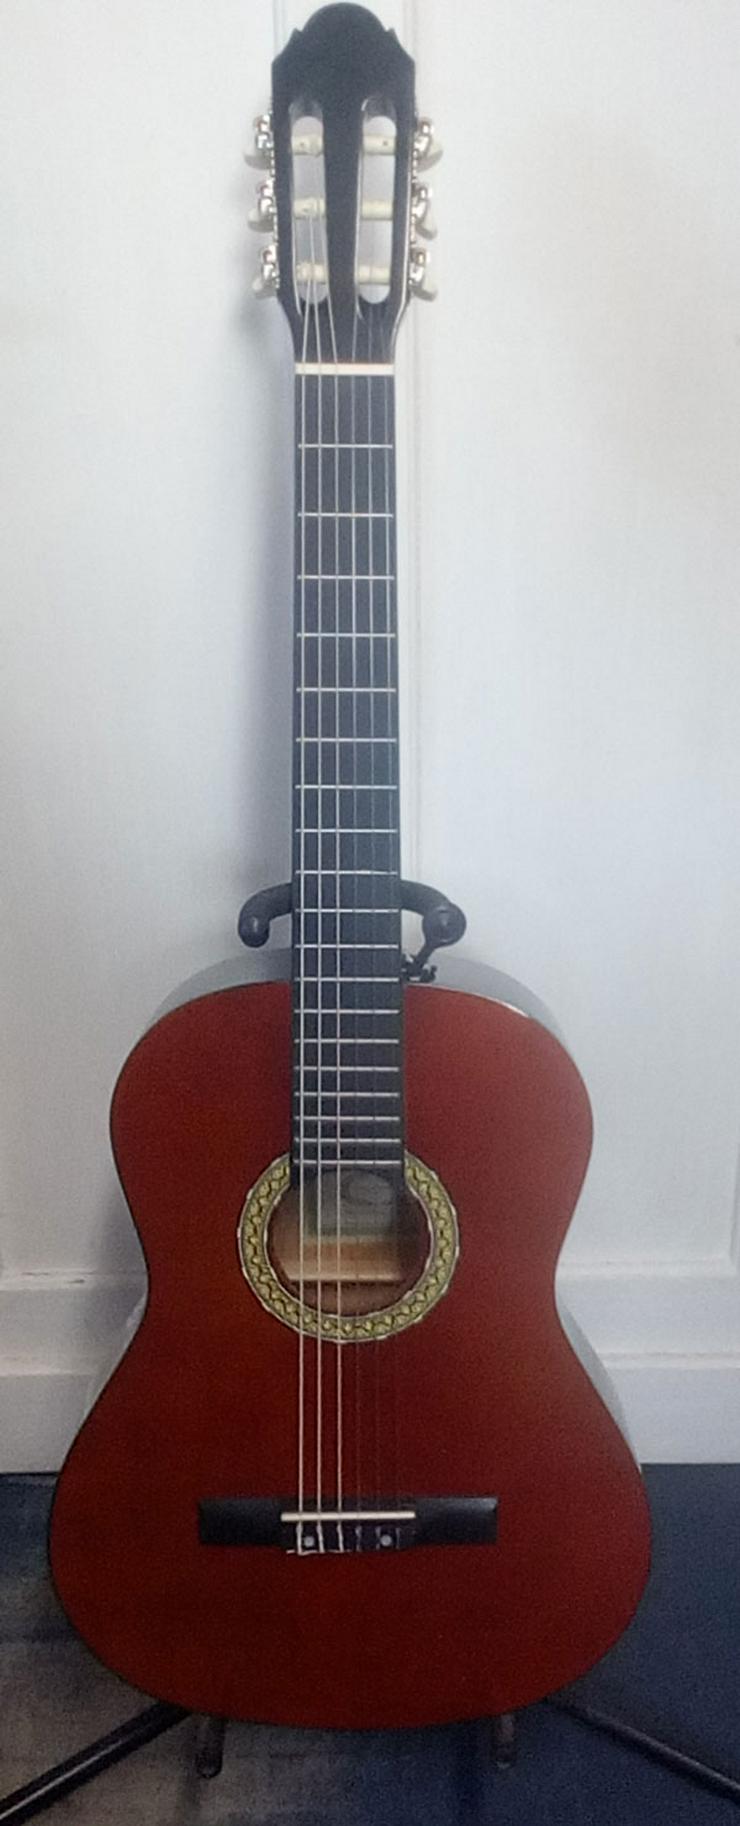 Bild 1: Konzertgitarre Gitarre 4/4 Größe in braun